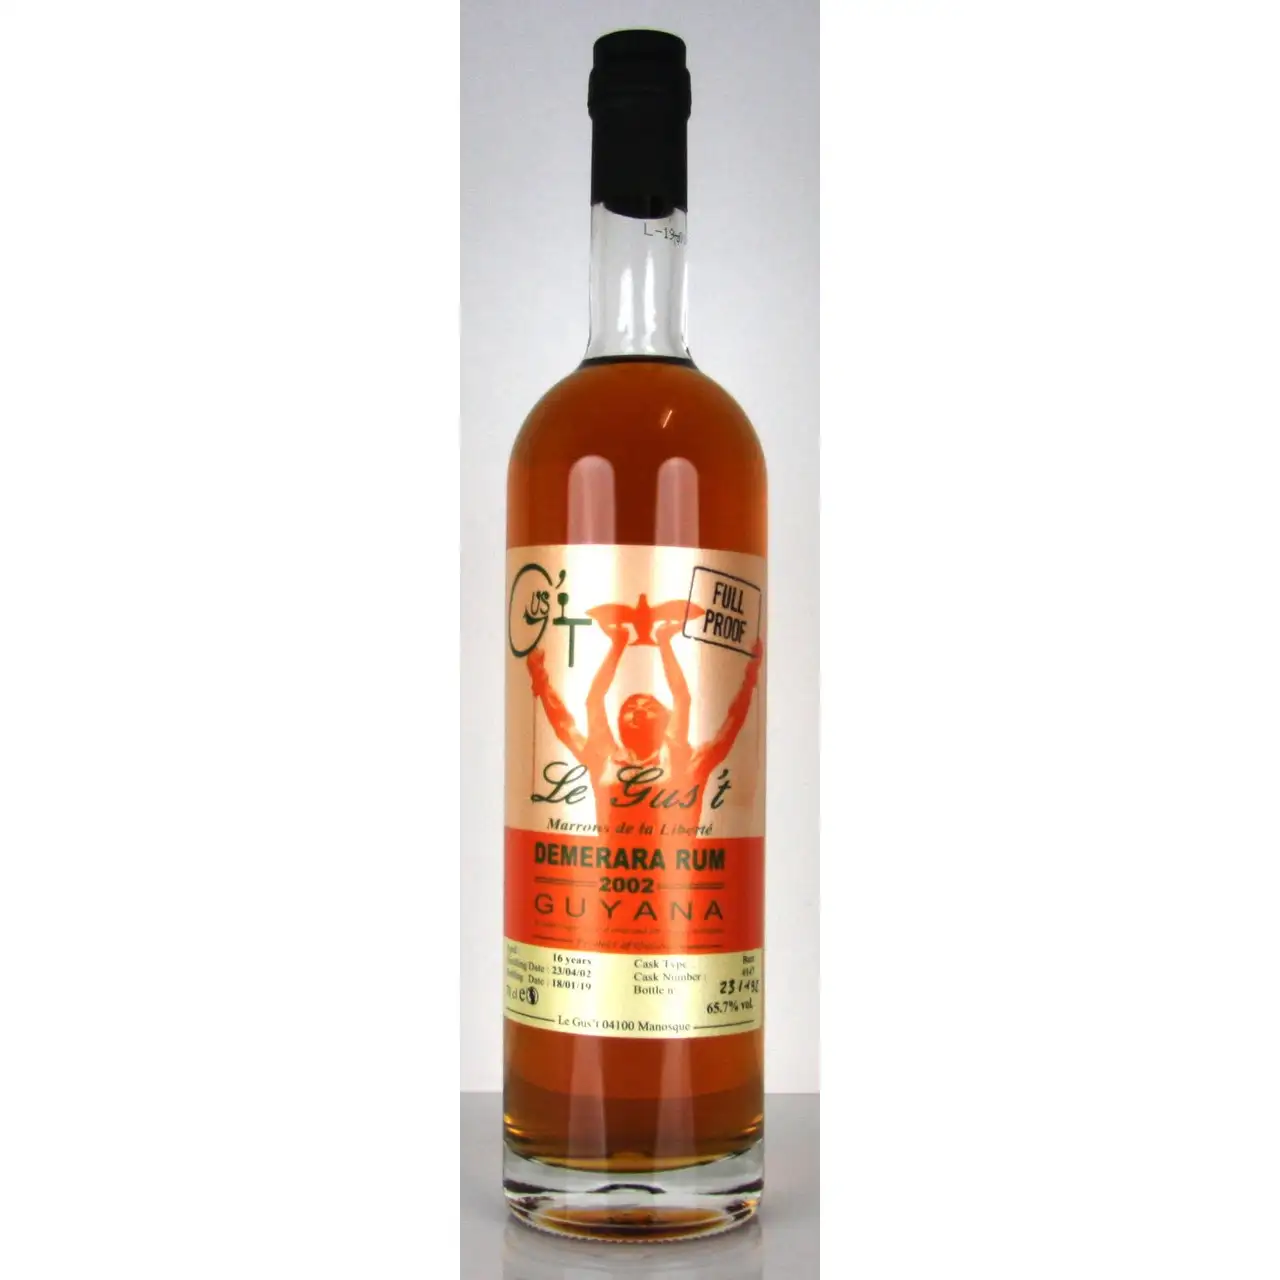 Image of the front of the bottle of the rum Marrons de la Liberté